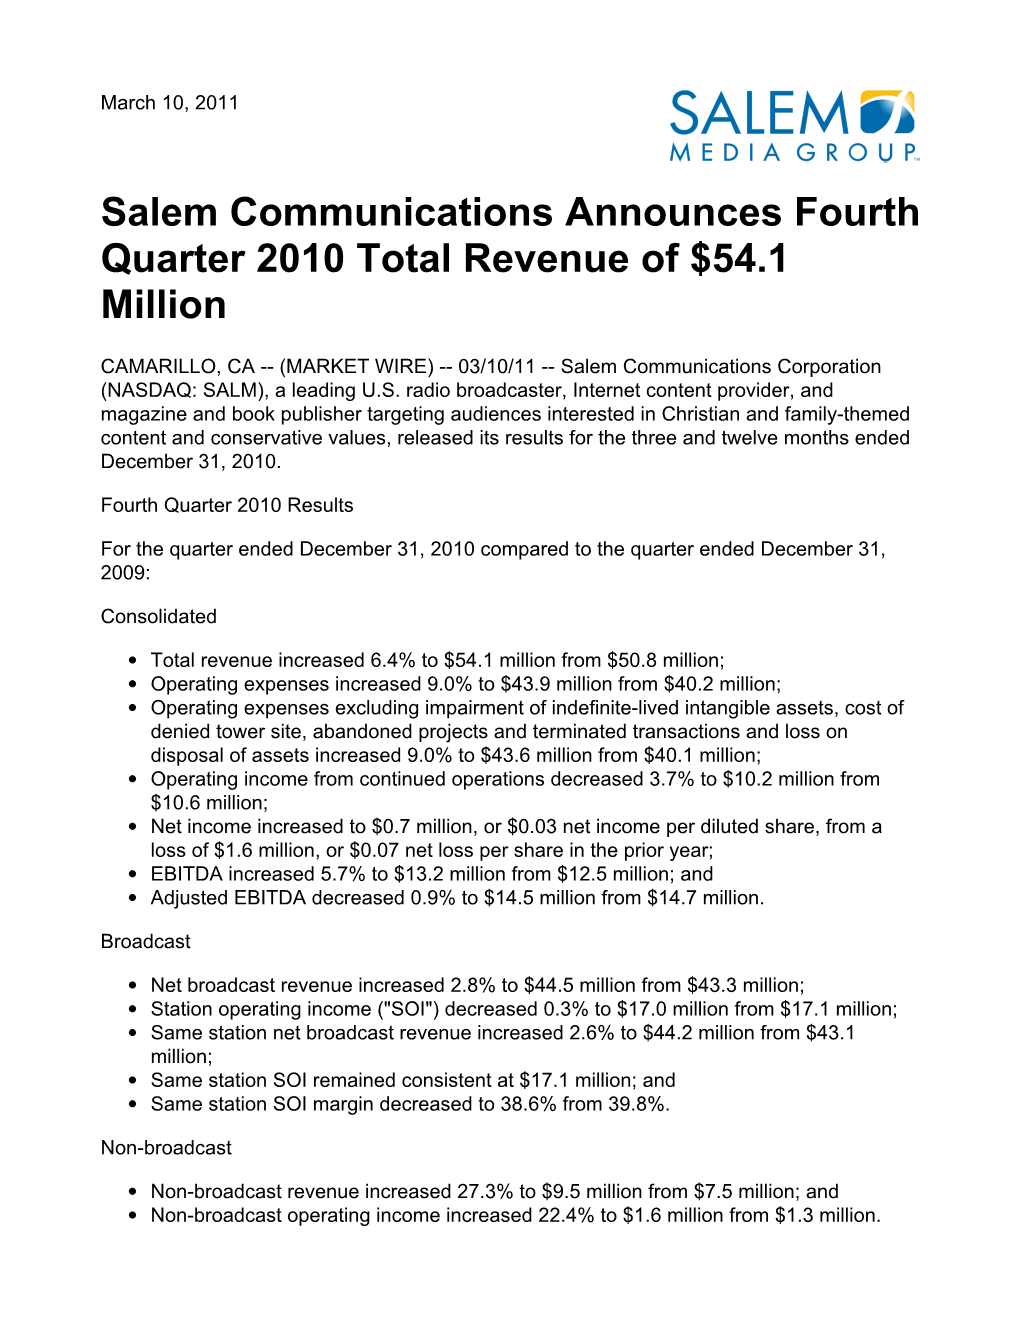 Salem Communications Announces Fourth Quarter 2010 Total Revenue of $54.1 Million